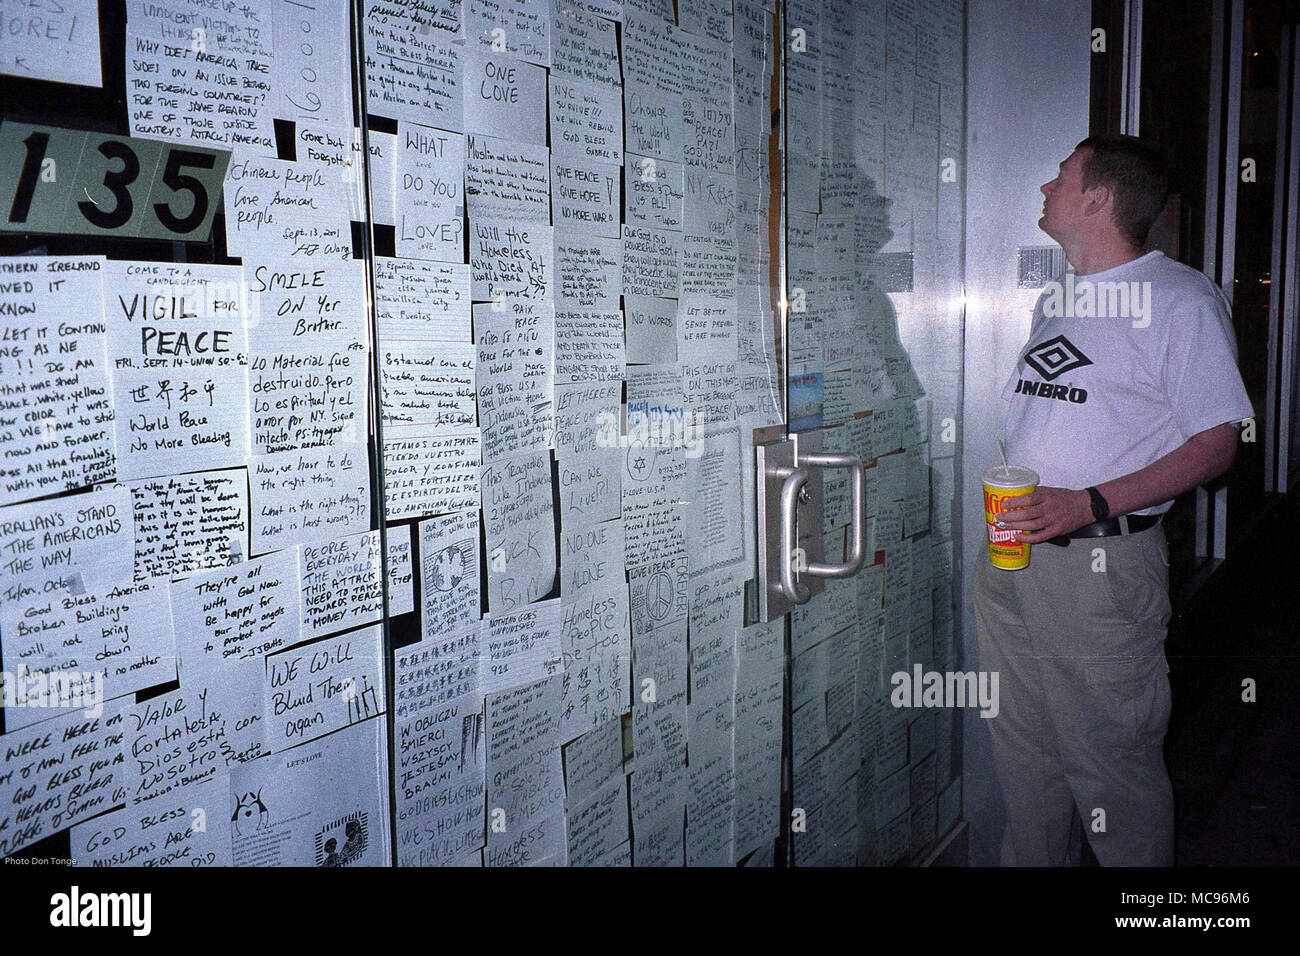 Darren Lowe ein Tourist aus dem Vereinigten Königreich wird dargestellt, an einigen der Tribute und Kommentare von New Yorkern auf dem Glas Türen eines Gebäudes links am Tag nach dem Terroranschlag auf das World Trade Center in New York City auf 9/11 Foto DON TONGE Fotograf, Stockfoto